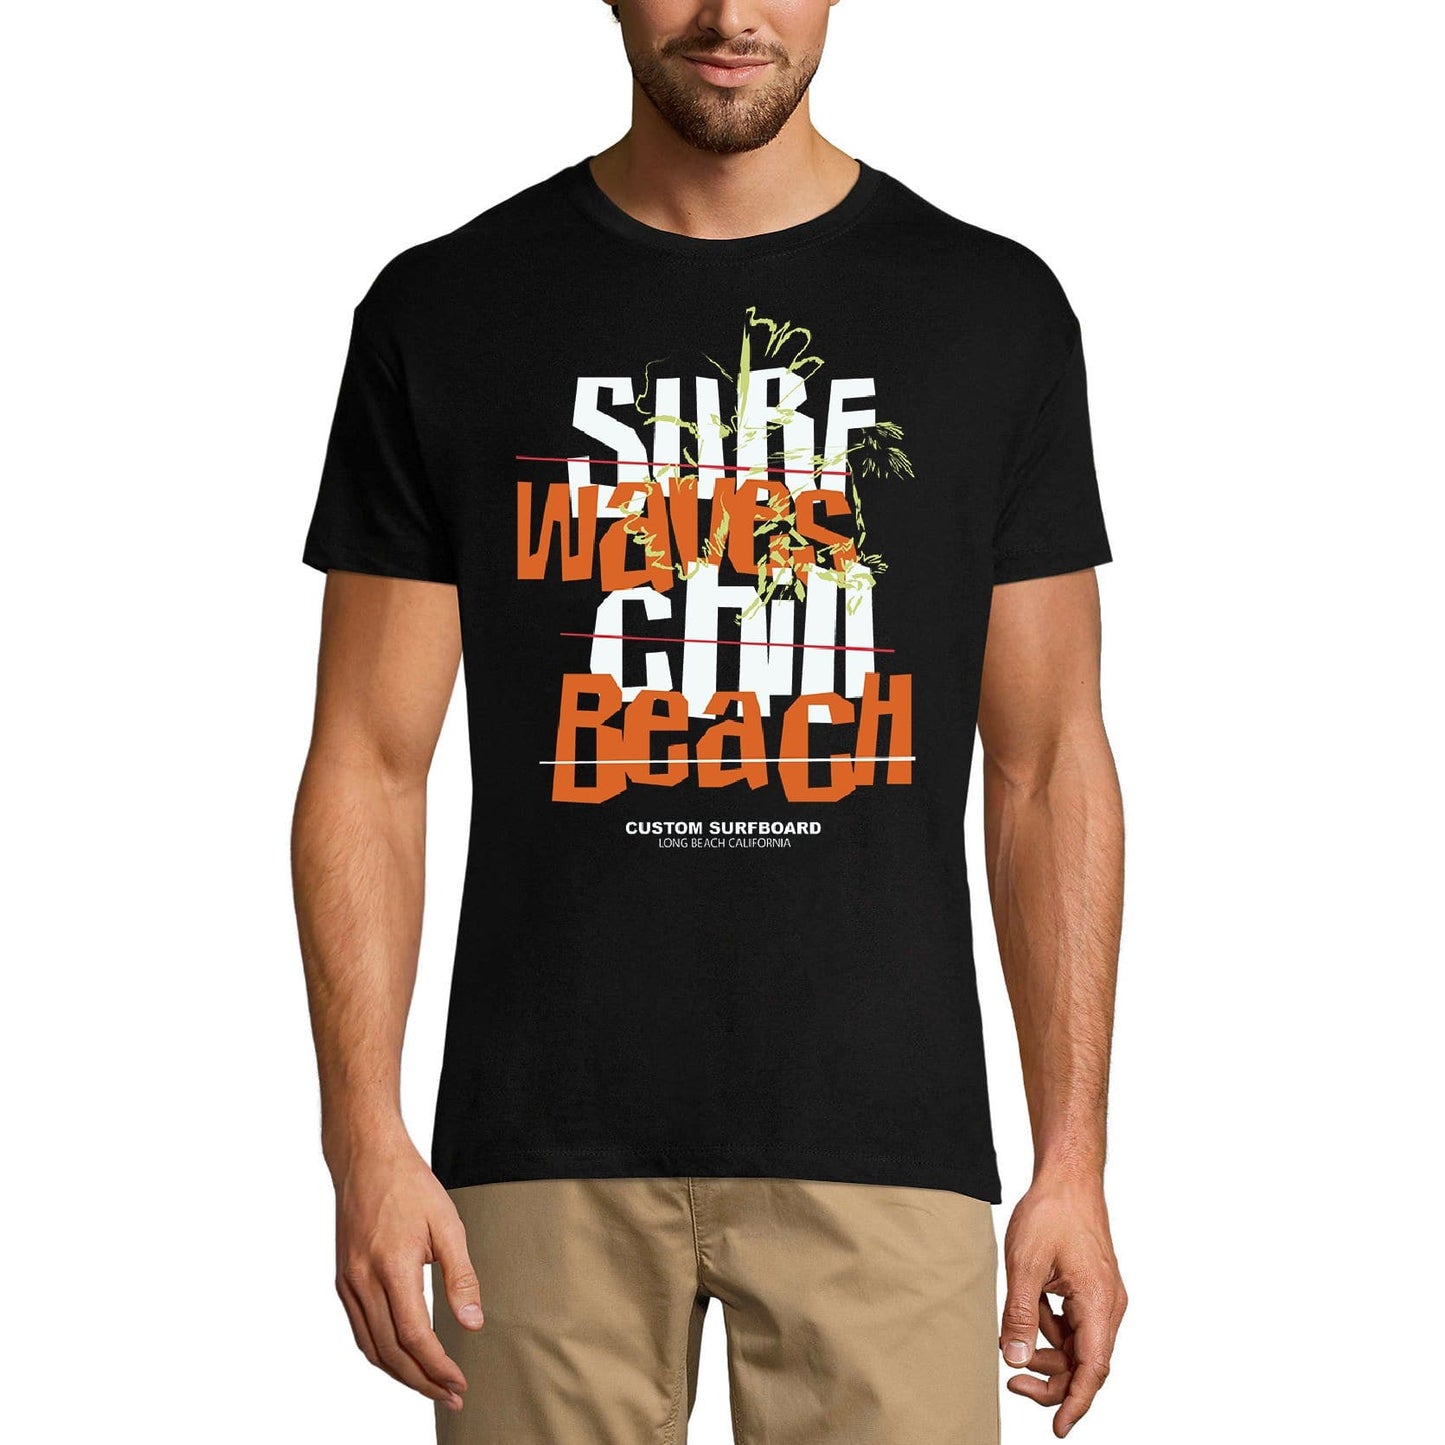 ULTRABASIC Men's Novelty T-Shirt Surf Waves Chill Beach Tee Shirt